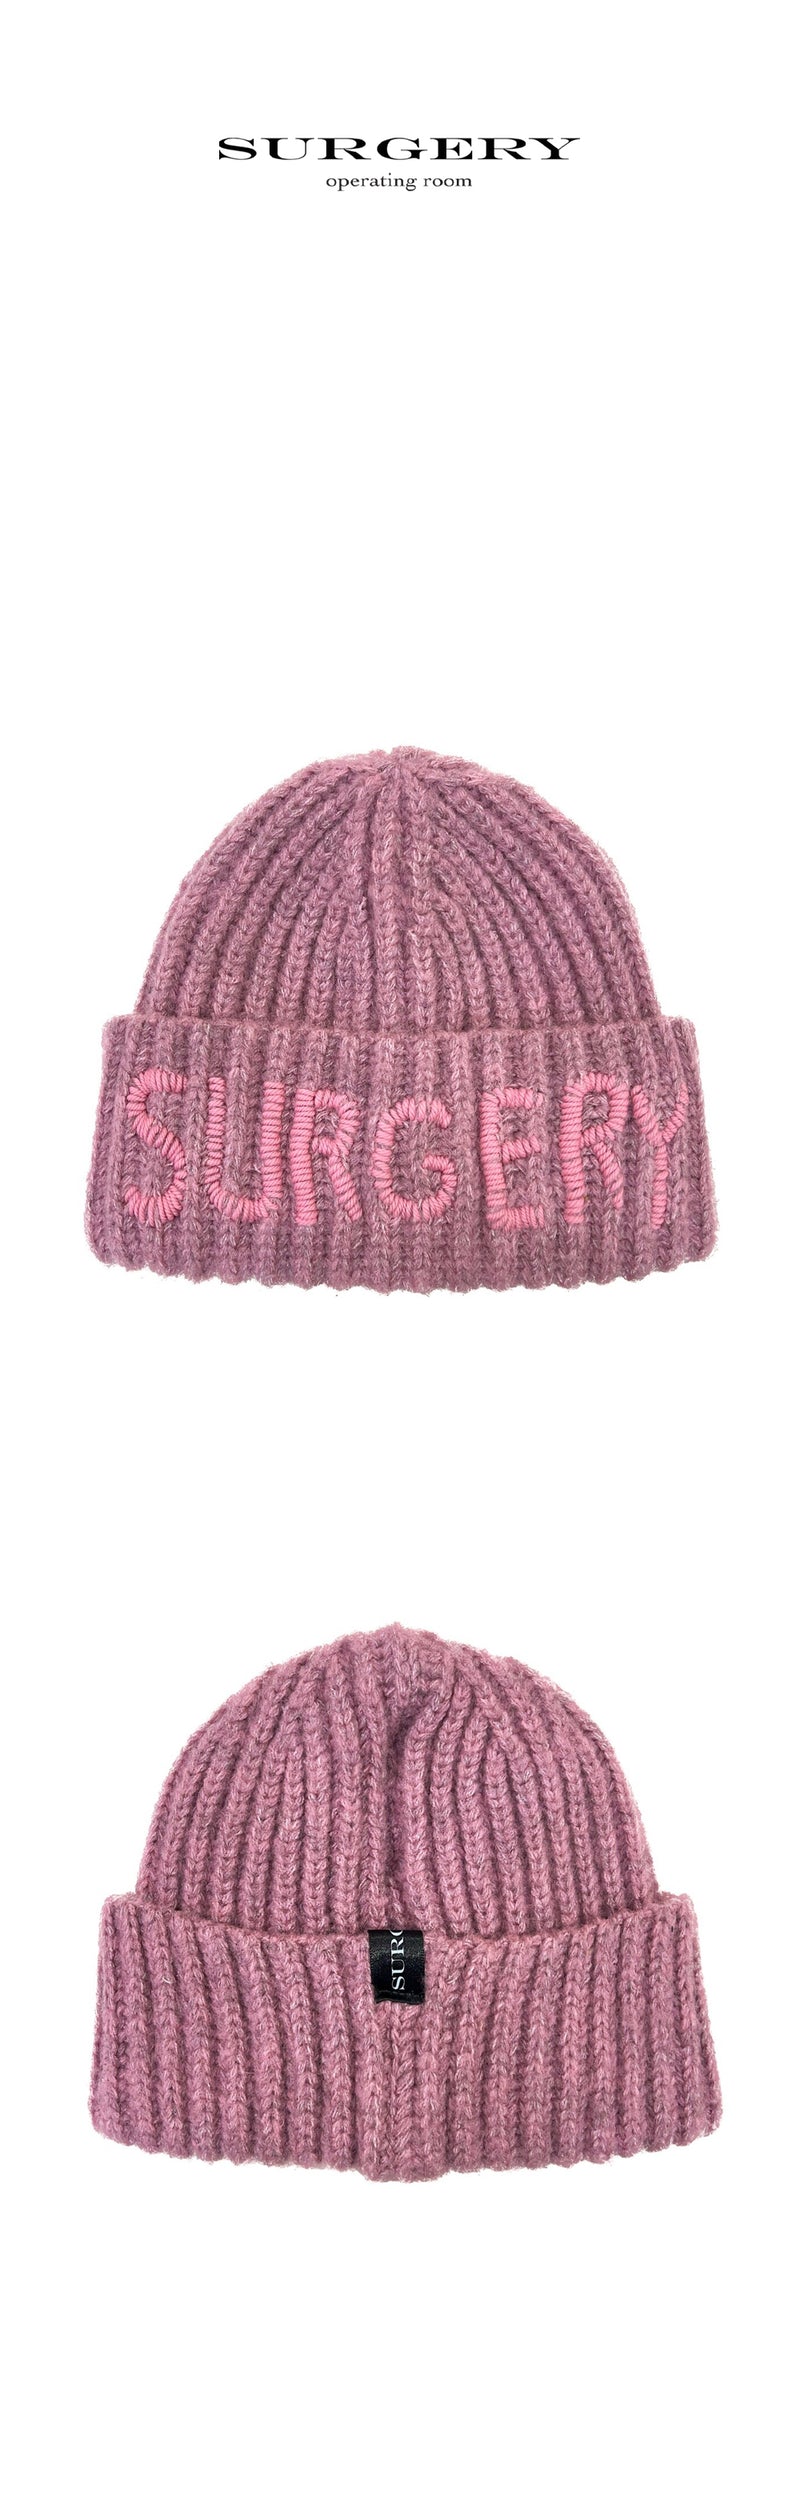 ハンドステッチ刺繍ロゴビーニー / surgery hand stitch embroidery logo beanie 'pink'